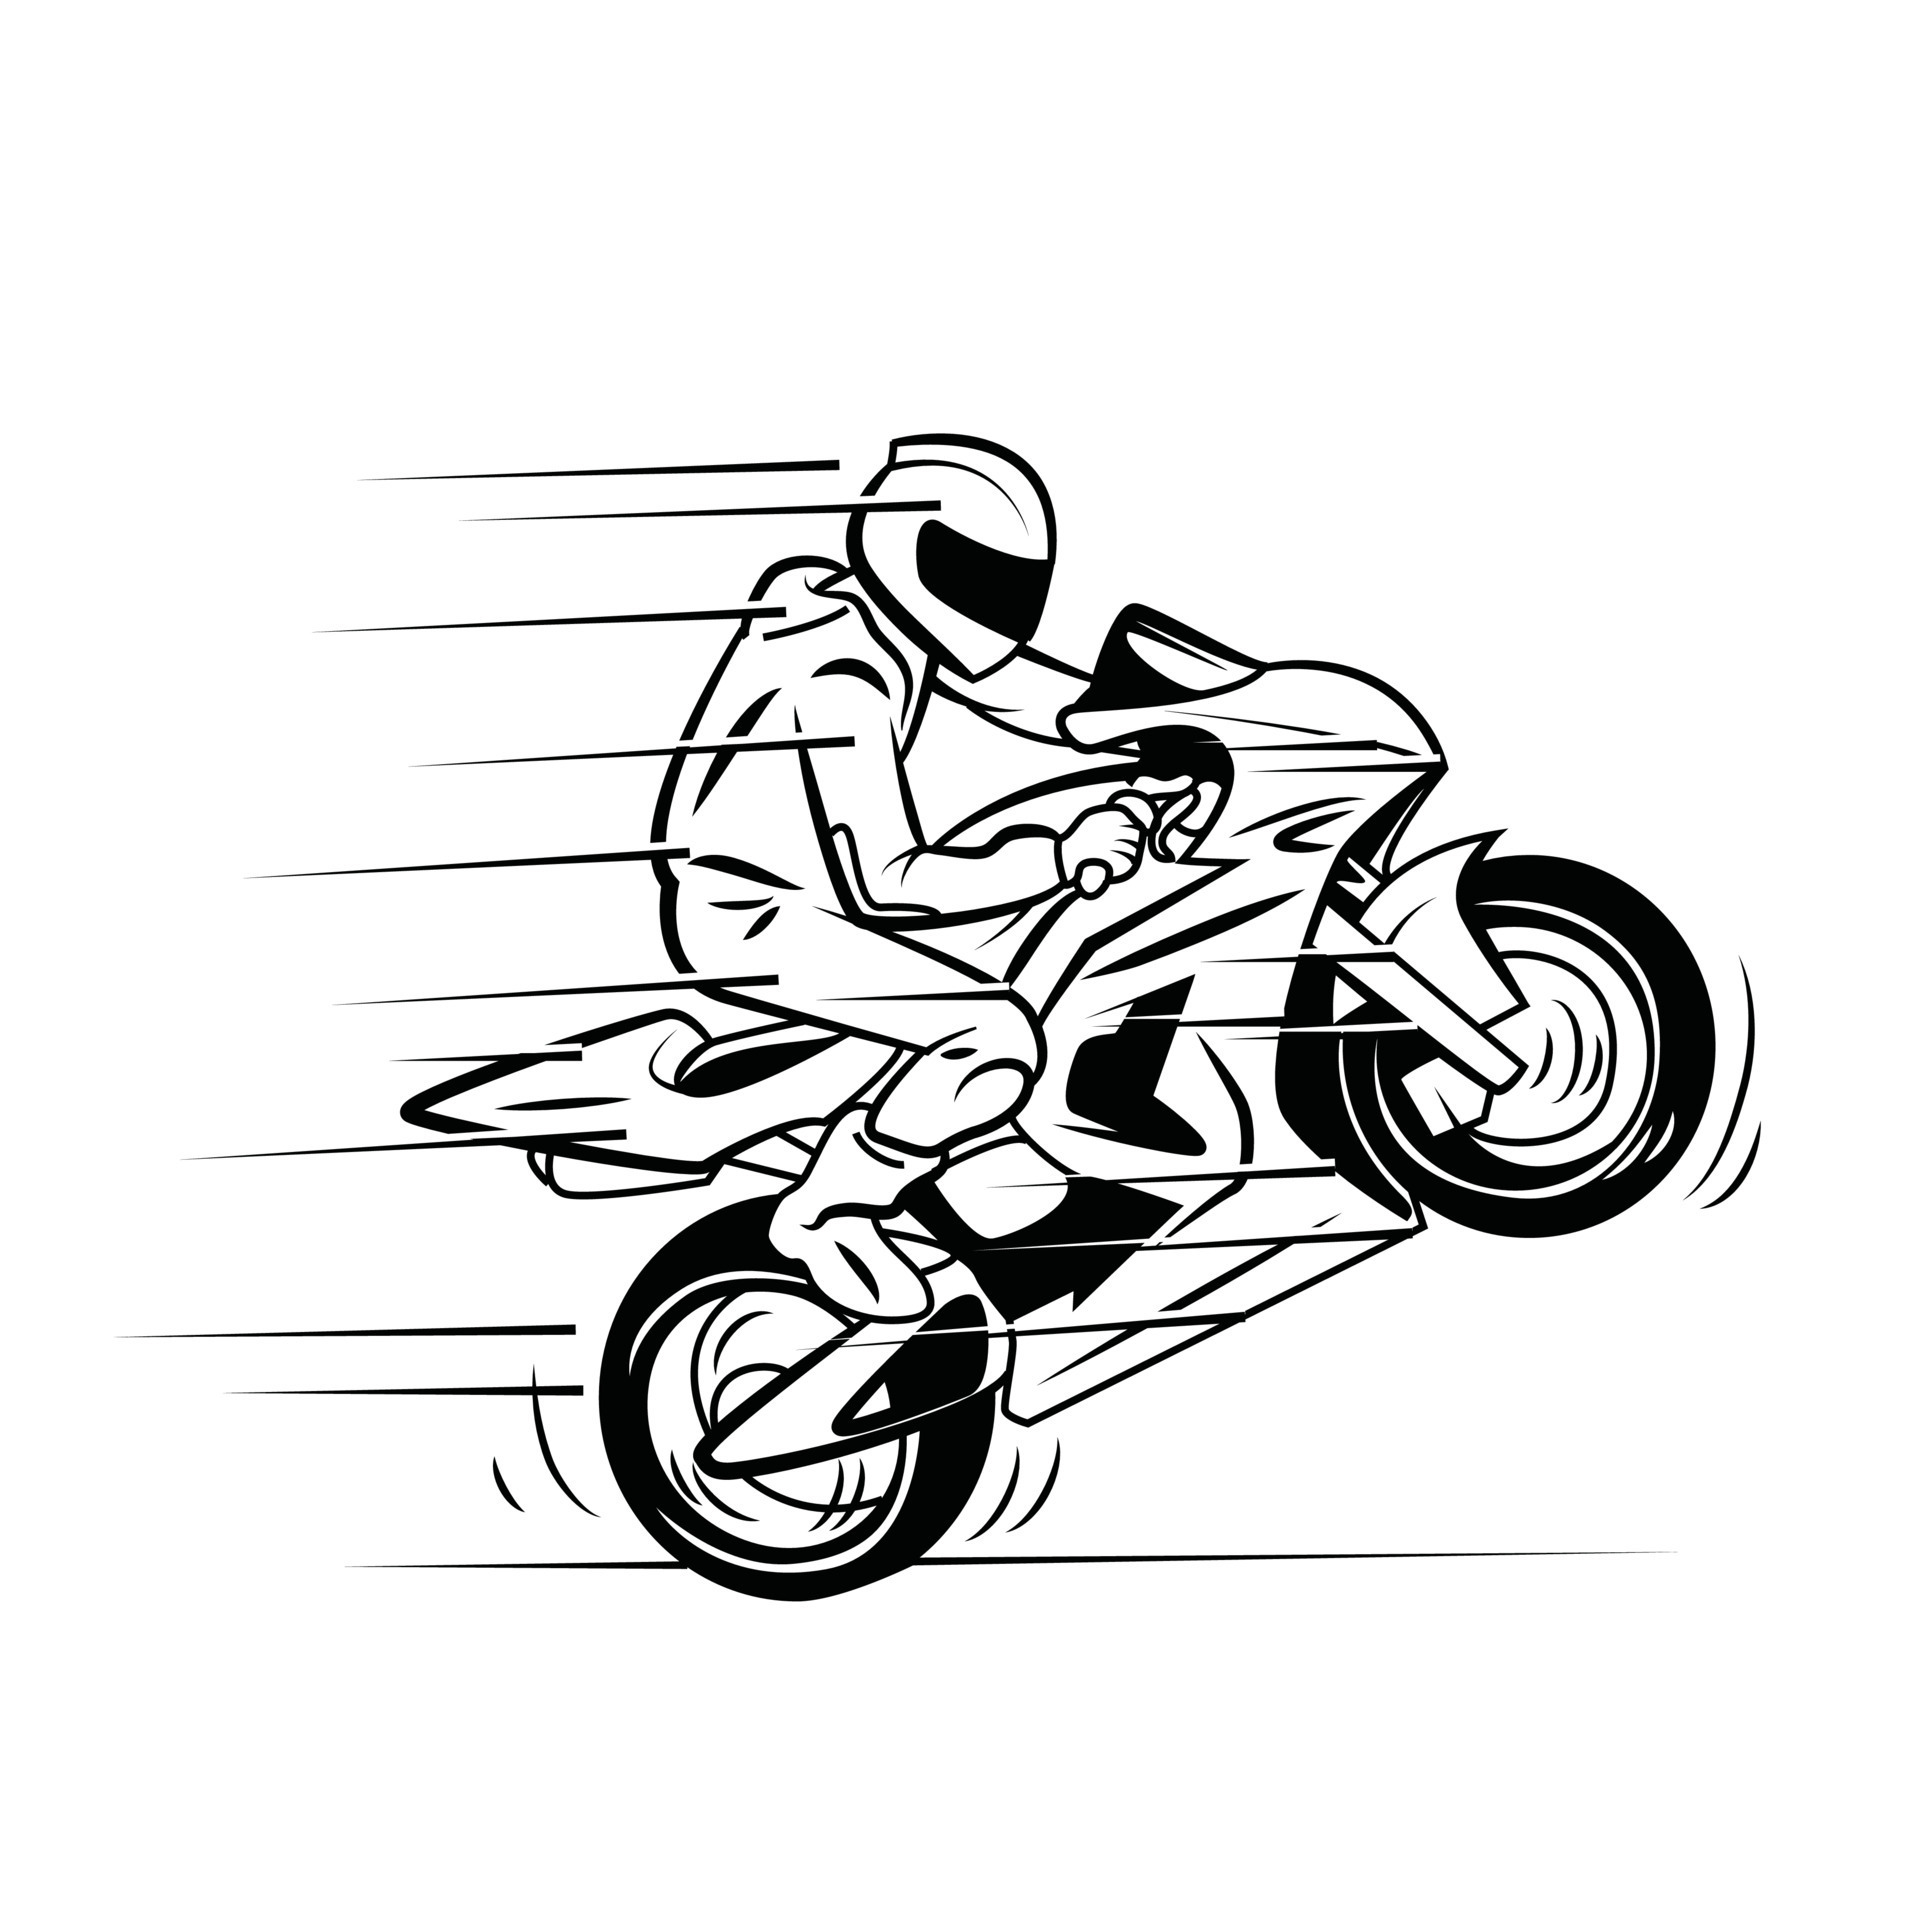 Motocross Racer Na Pista De Poeira. Estilo Dos Desenhos Animados.  Ilustração Vetorial Conceitual Sobre Motocross Sport.Motocross Racer Na  Pista De Poeira. Estilo Dos Desenhos Animados Royalty Free SVG, Cliparts,  Vetores, e Ilustrações